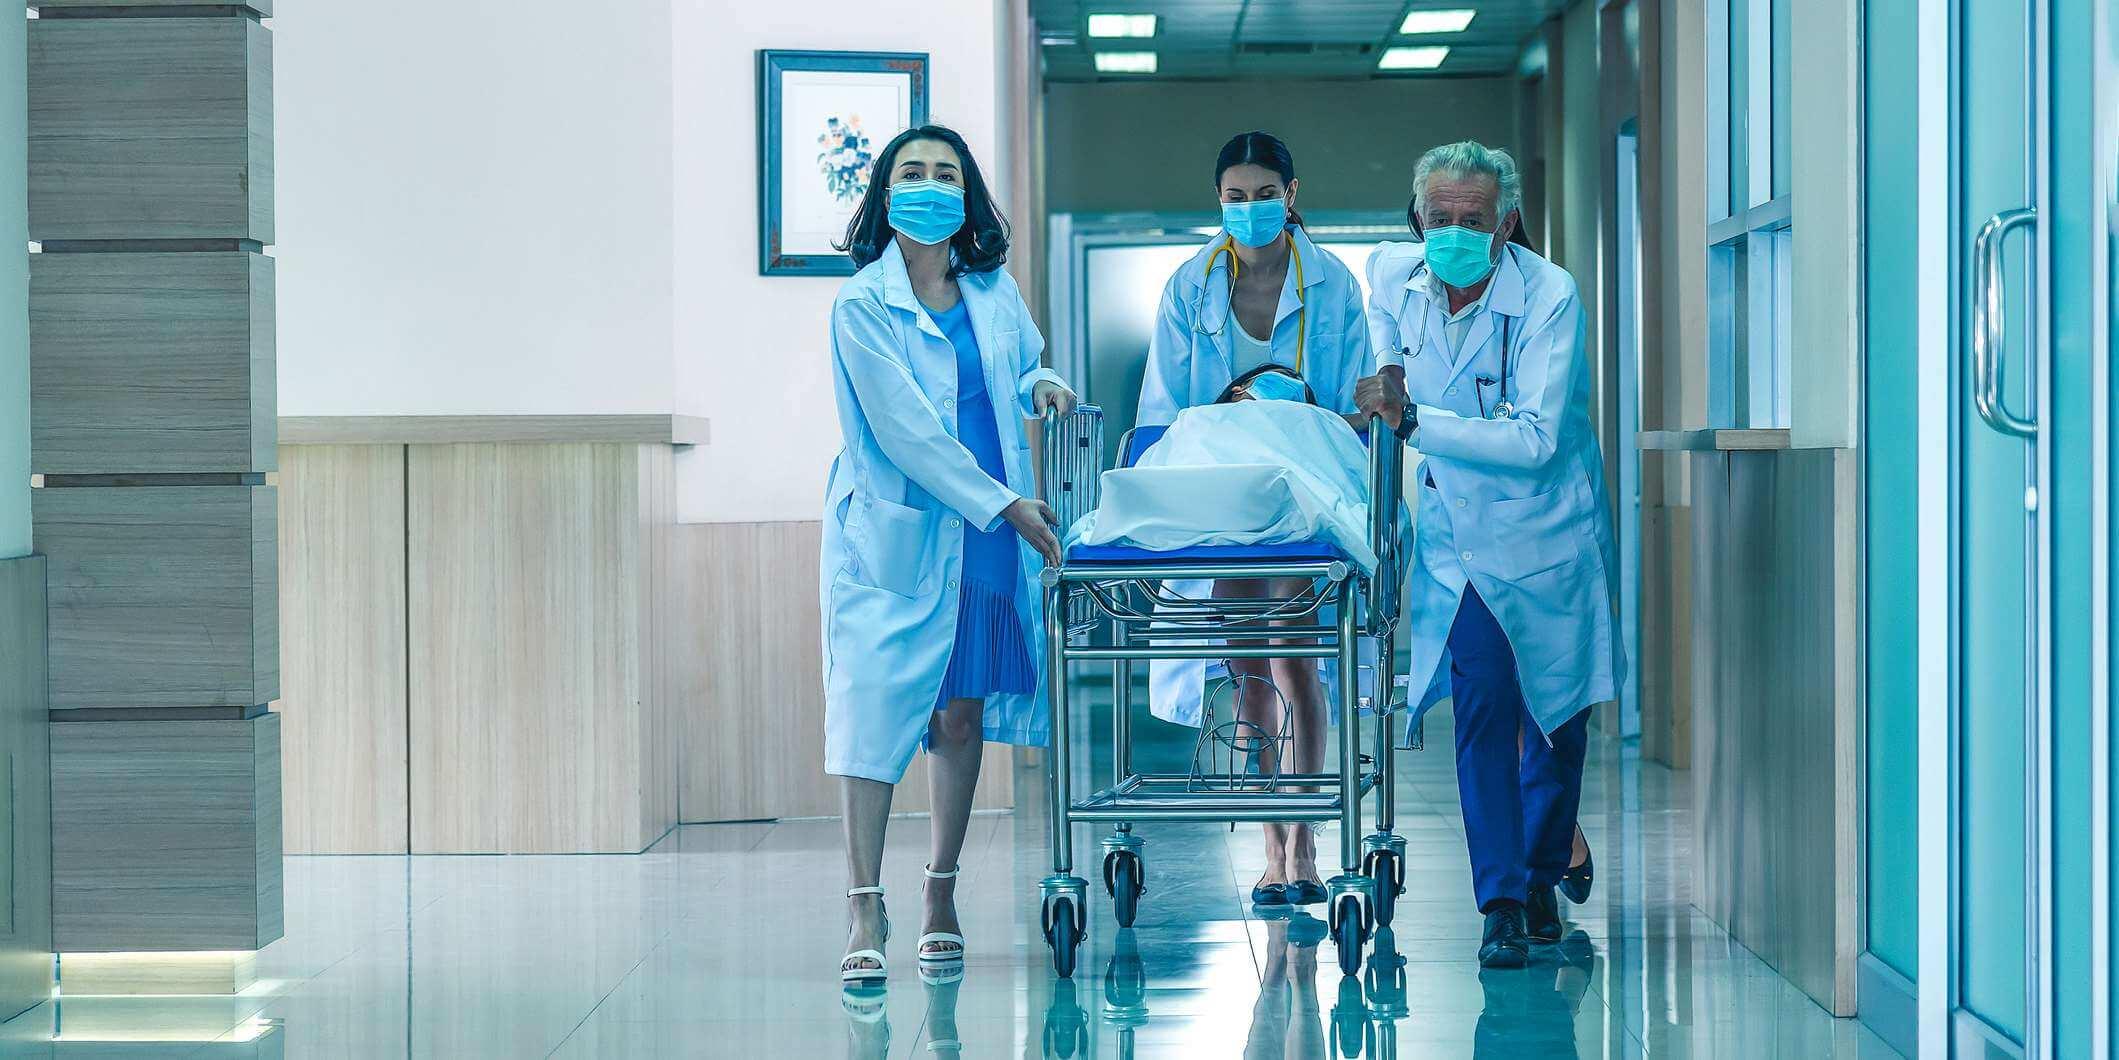 Rückansicht der Ärzte, die zur Operation rennen. Krankenhaus-Notfallteam, das eine Trage mit Patient durch die Krankenhaushalle trägt.